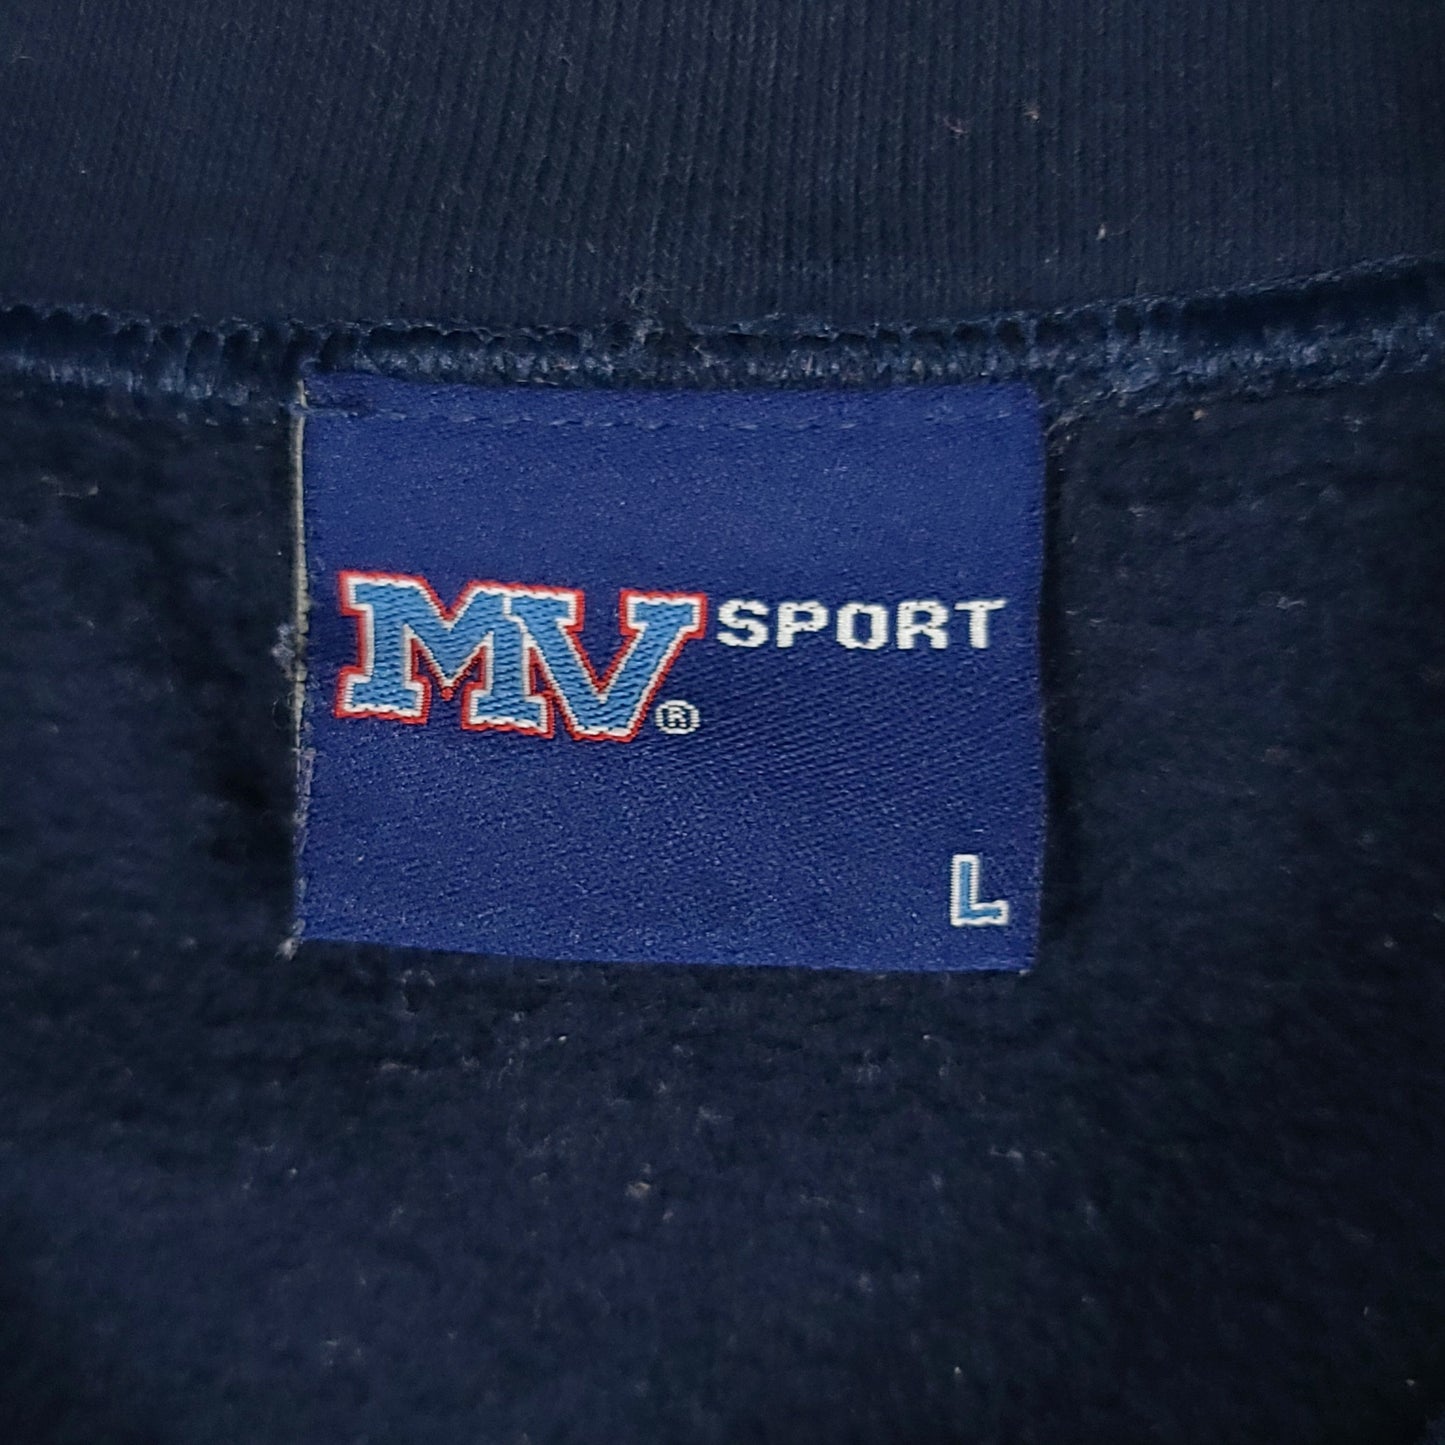 University of Illinois Alumni MV Sport Sweatshirt